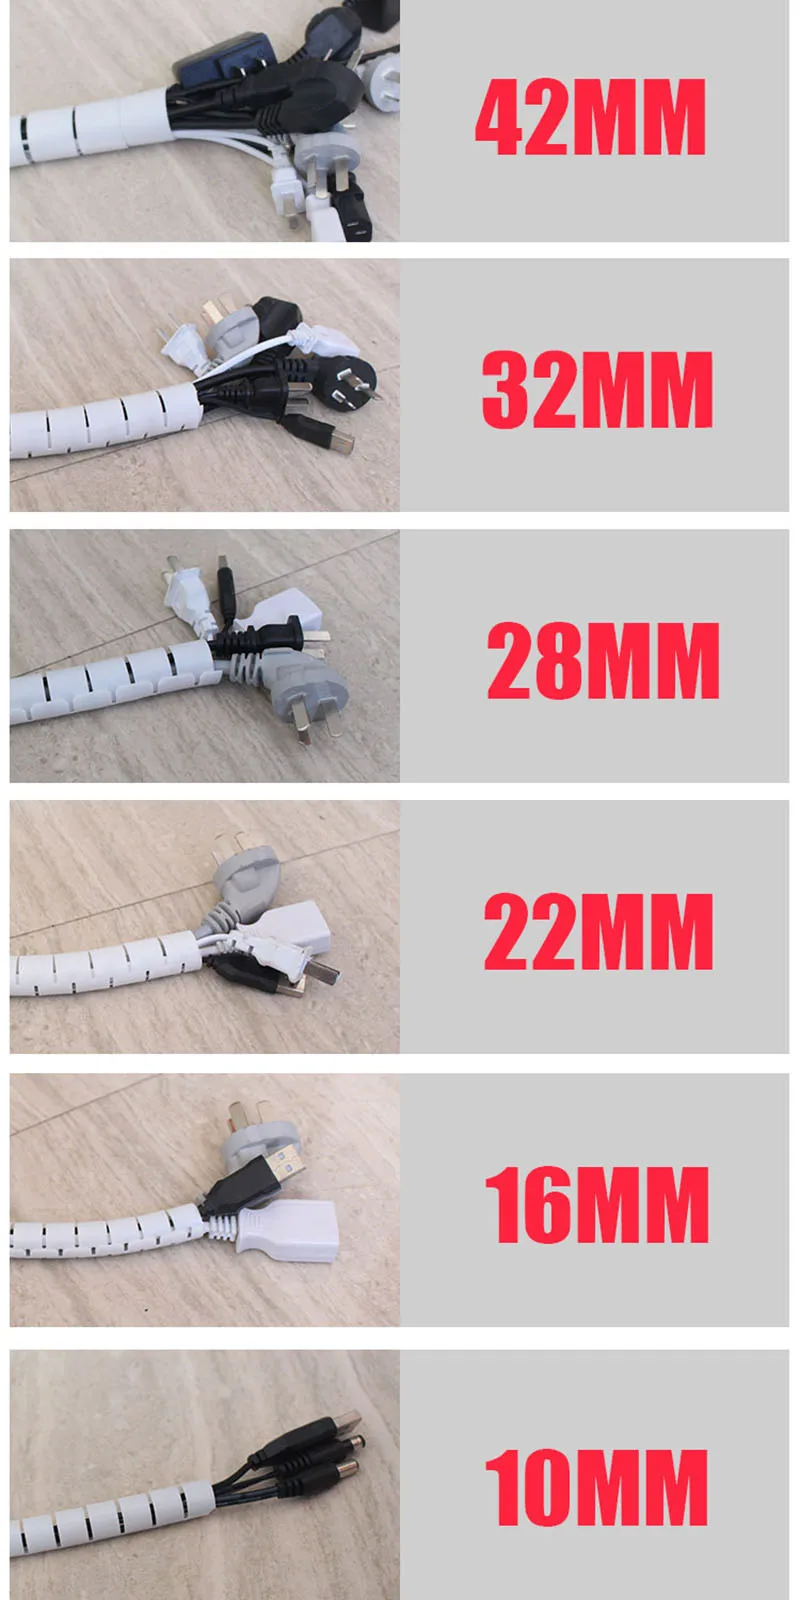 Кабельный провод обёрточная бумага Органайзер спиральная трубка устройство для сматывания кабеля защита шнура гибкое управление провод для хранения труб держатель кабеля